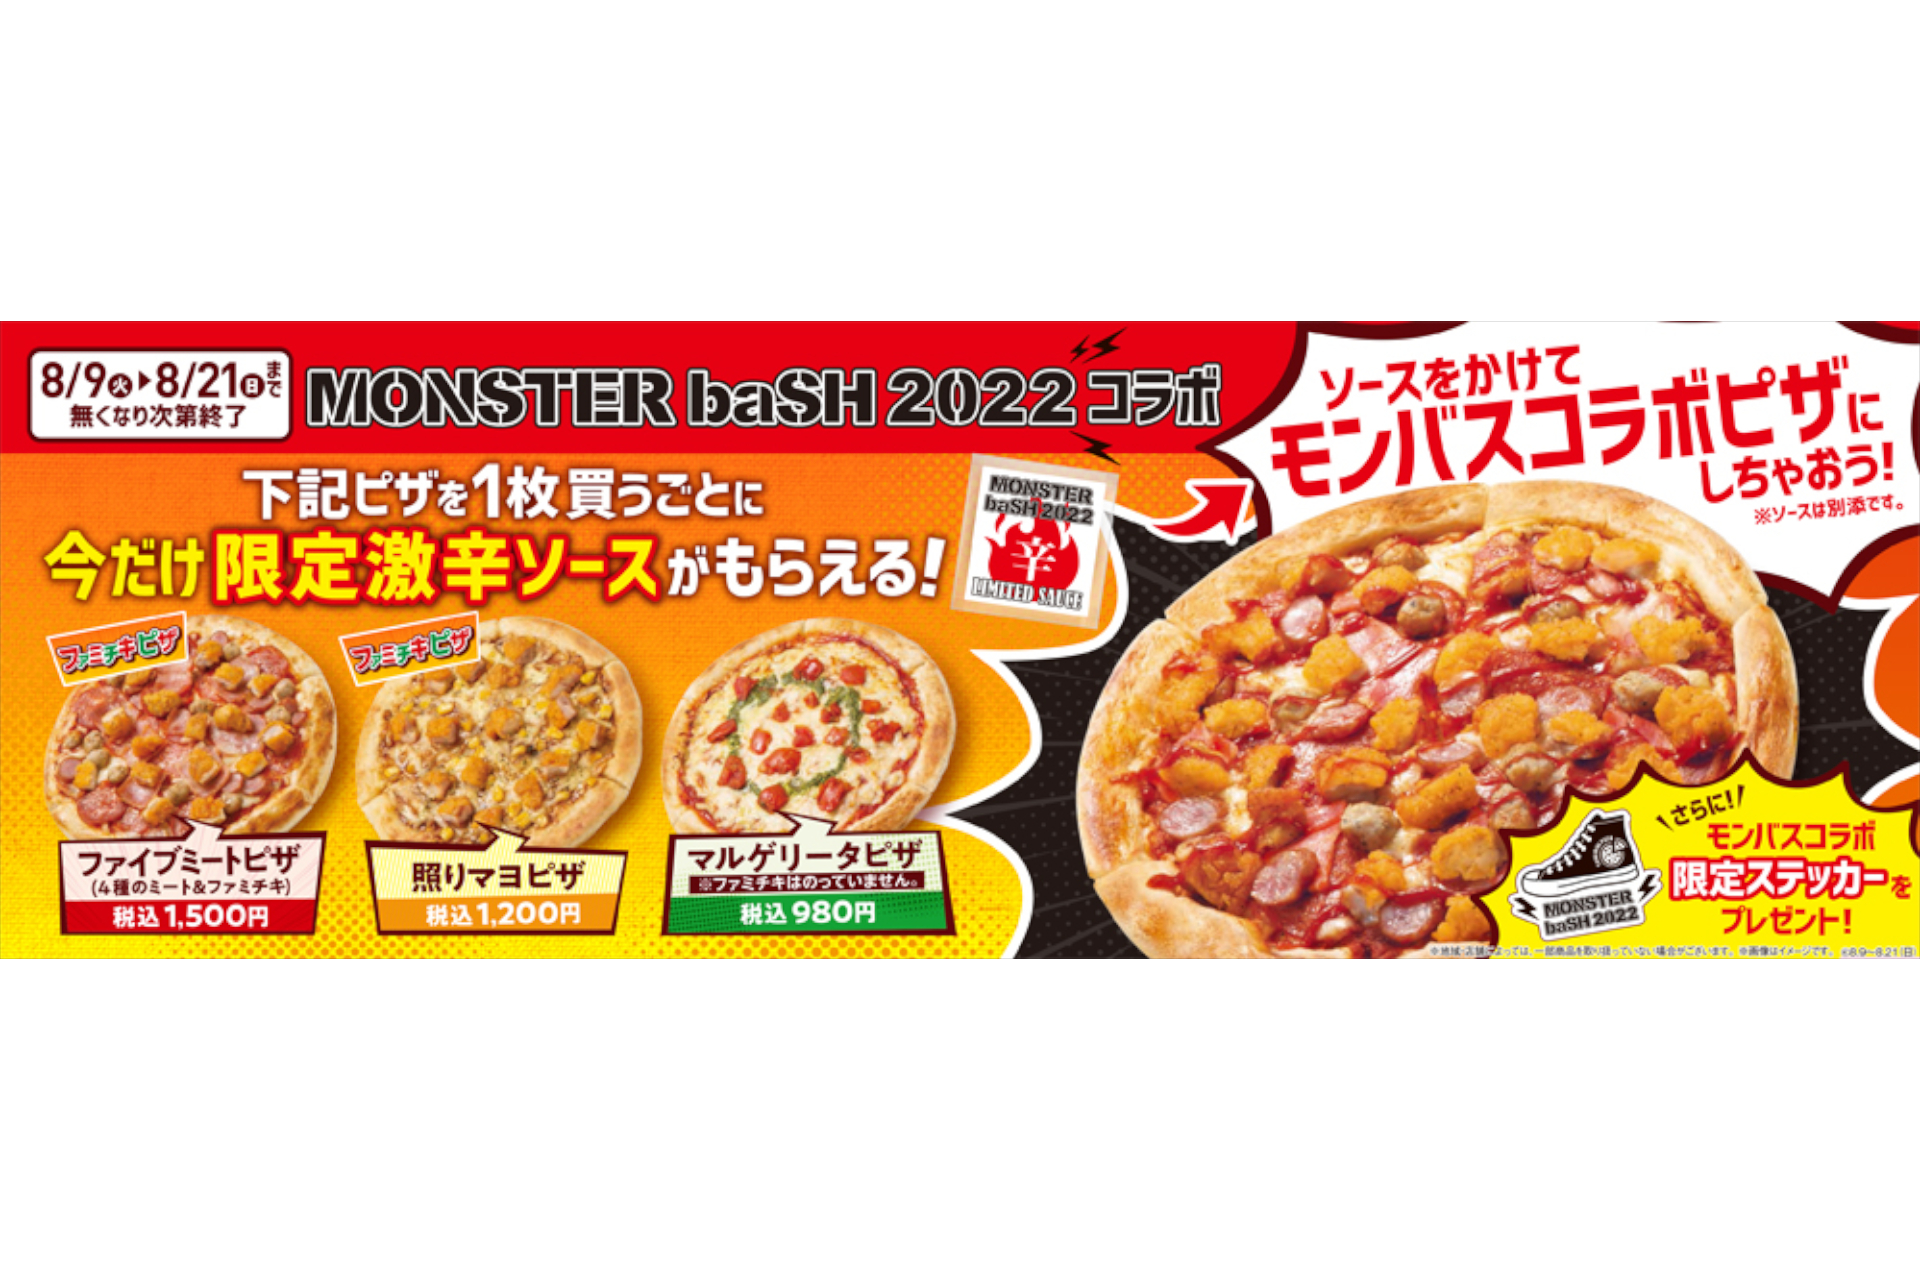 ファミマ Monster Bash 22 四国限定 焼きたてピザ 購入で激辛ソース ステッカープレゼント グルメ Watch